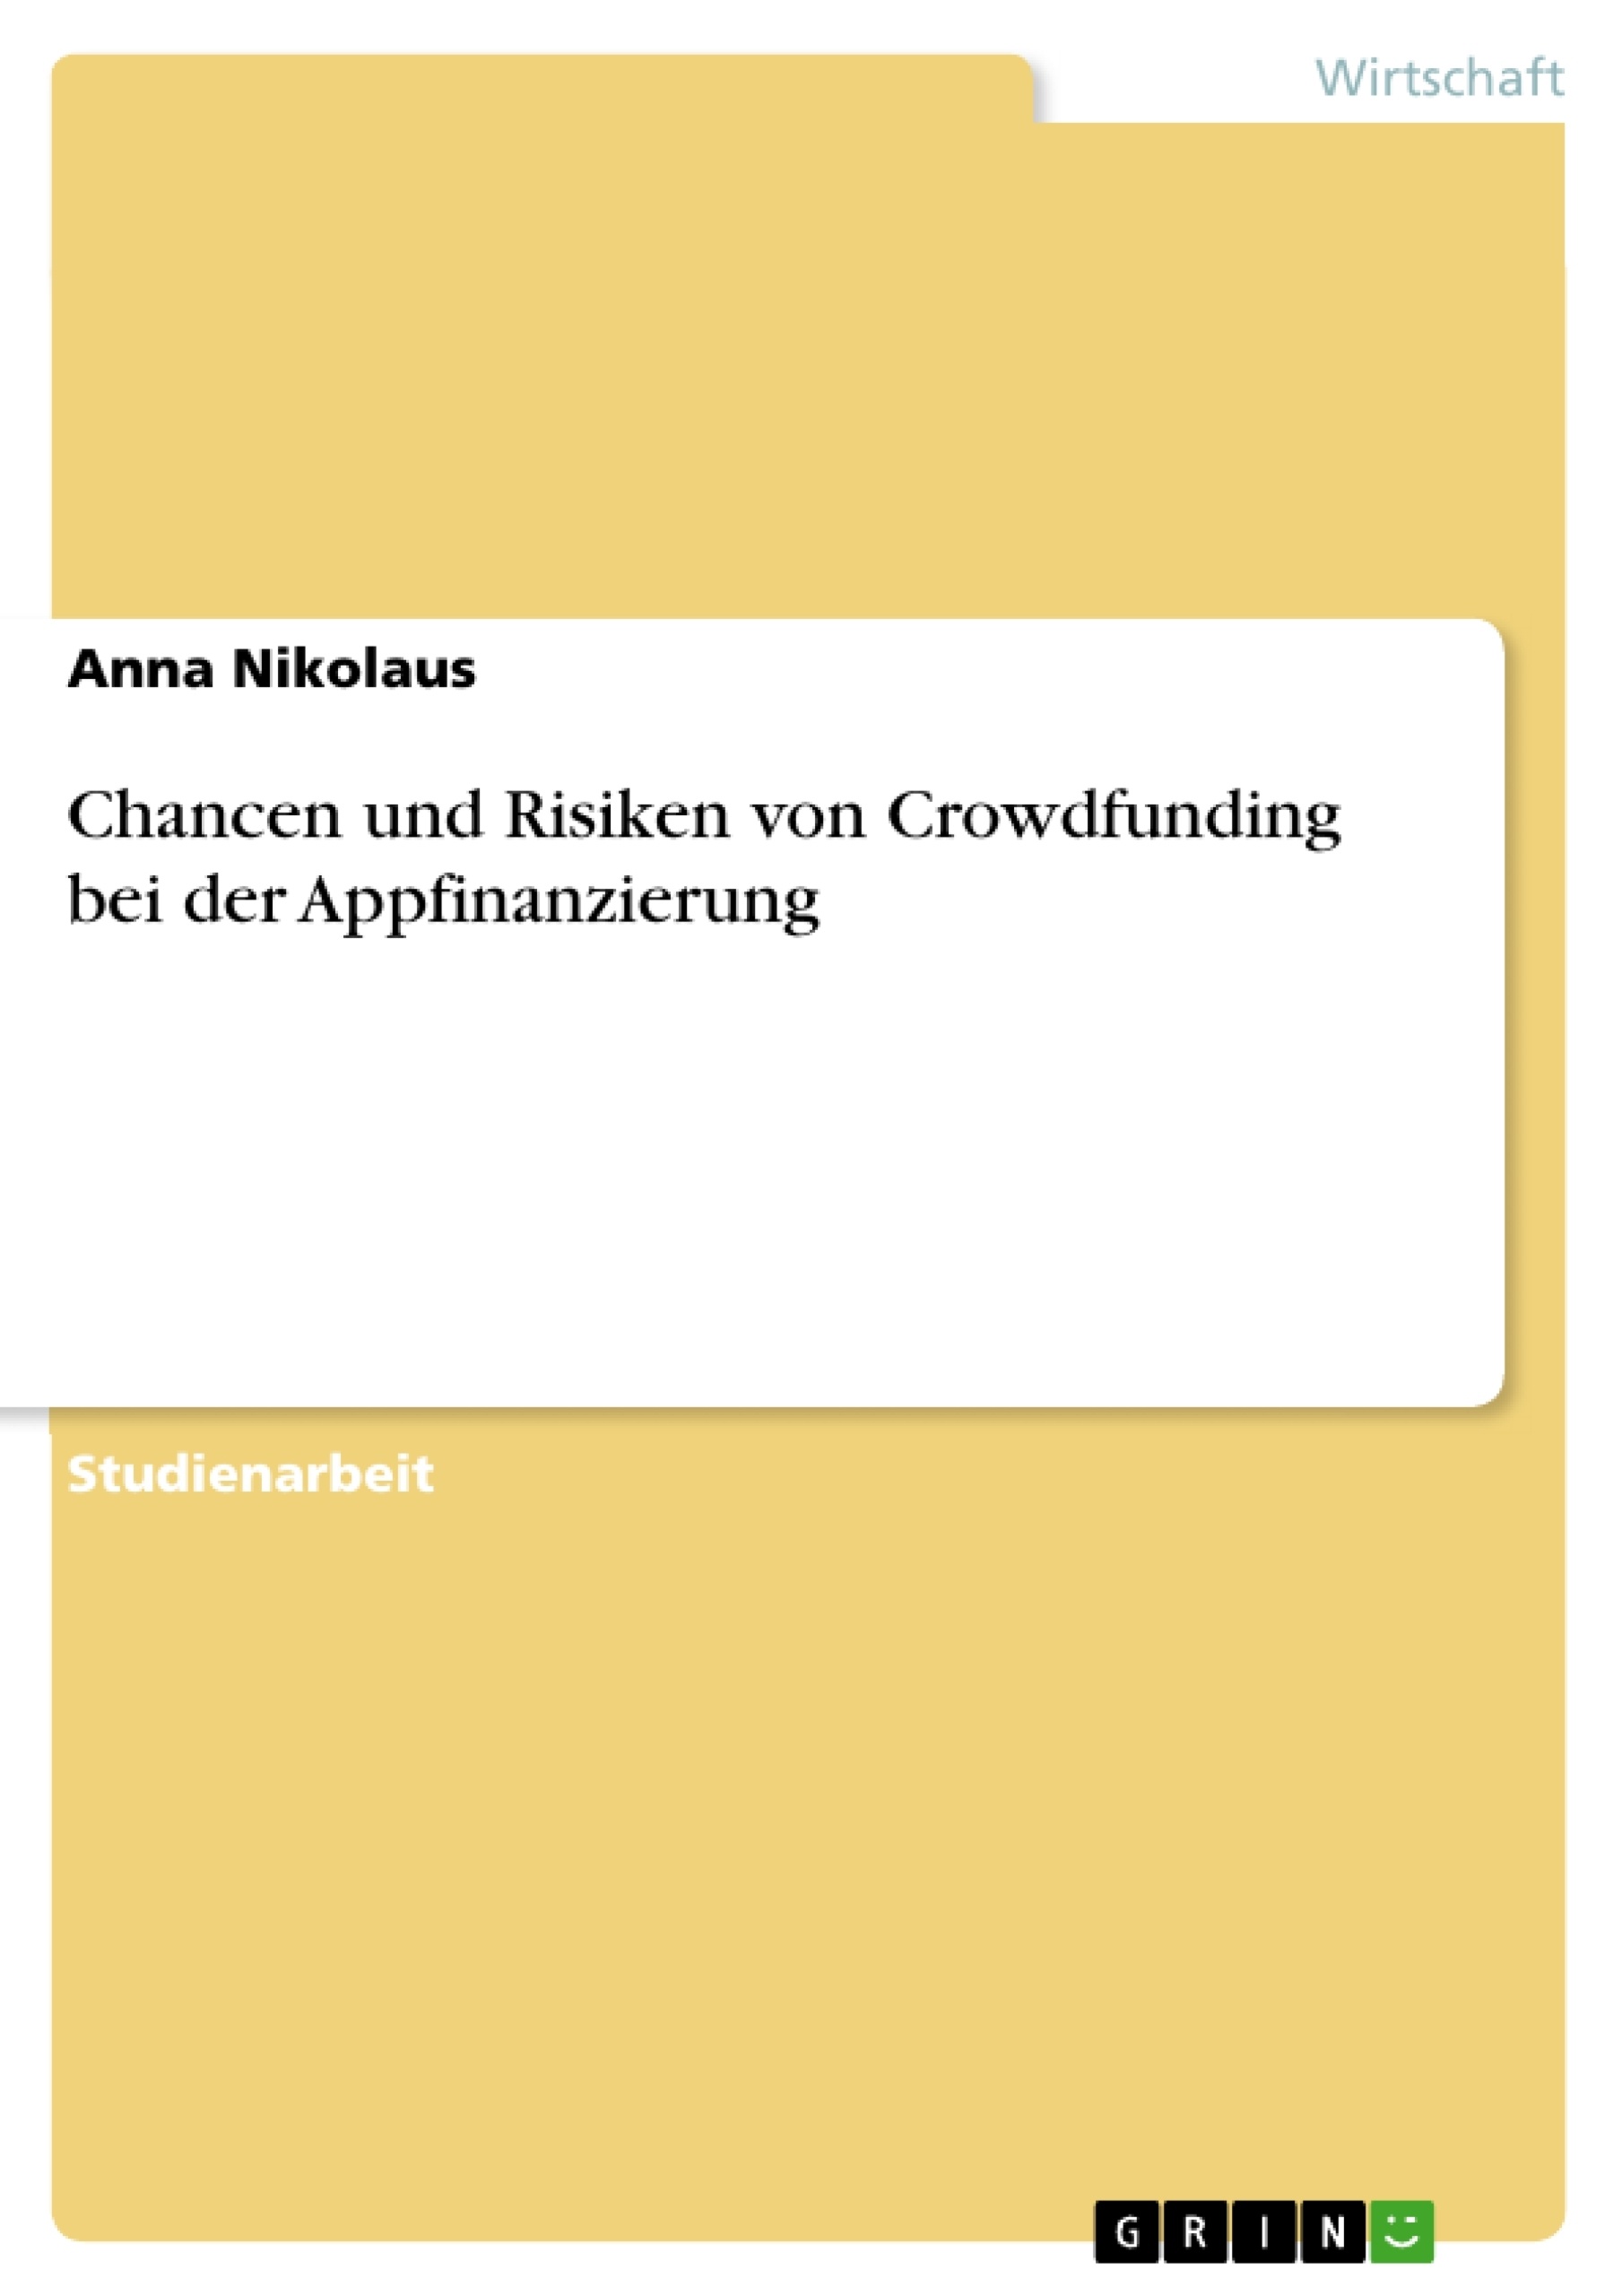 Titre: Chancen und Risiken von Crowdfunding bei der Appfinanzierung